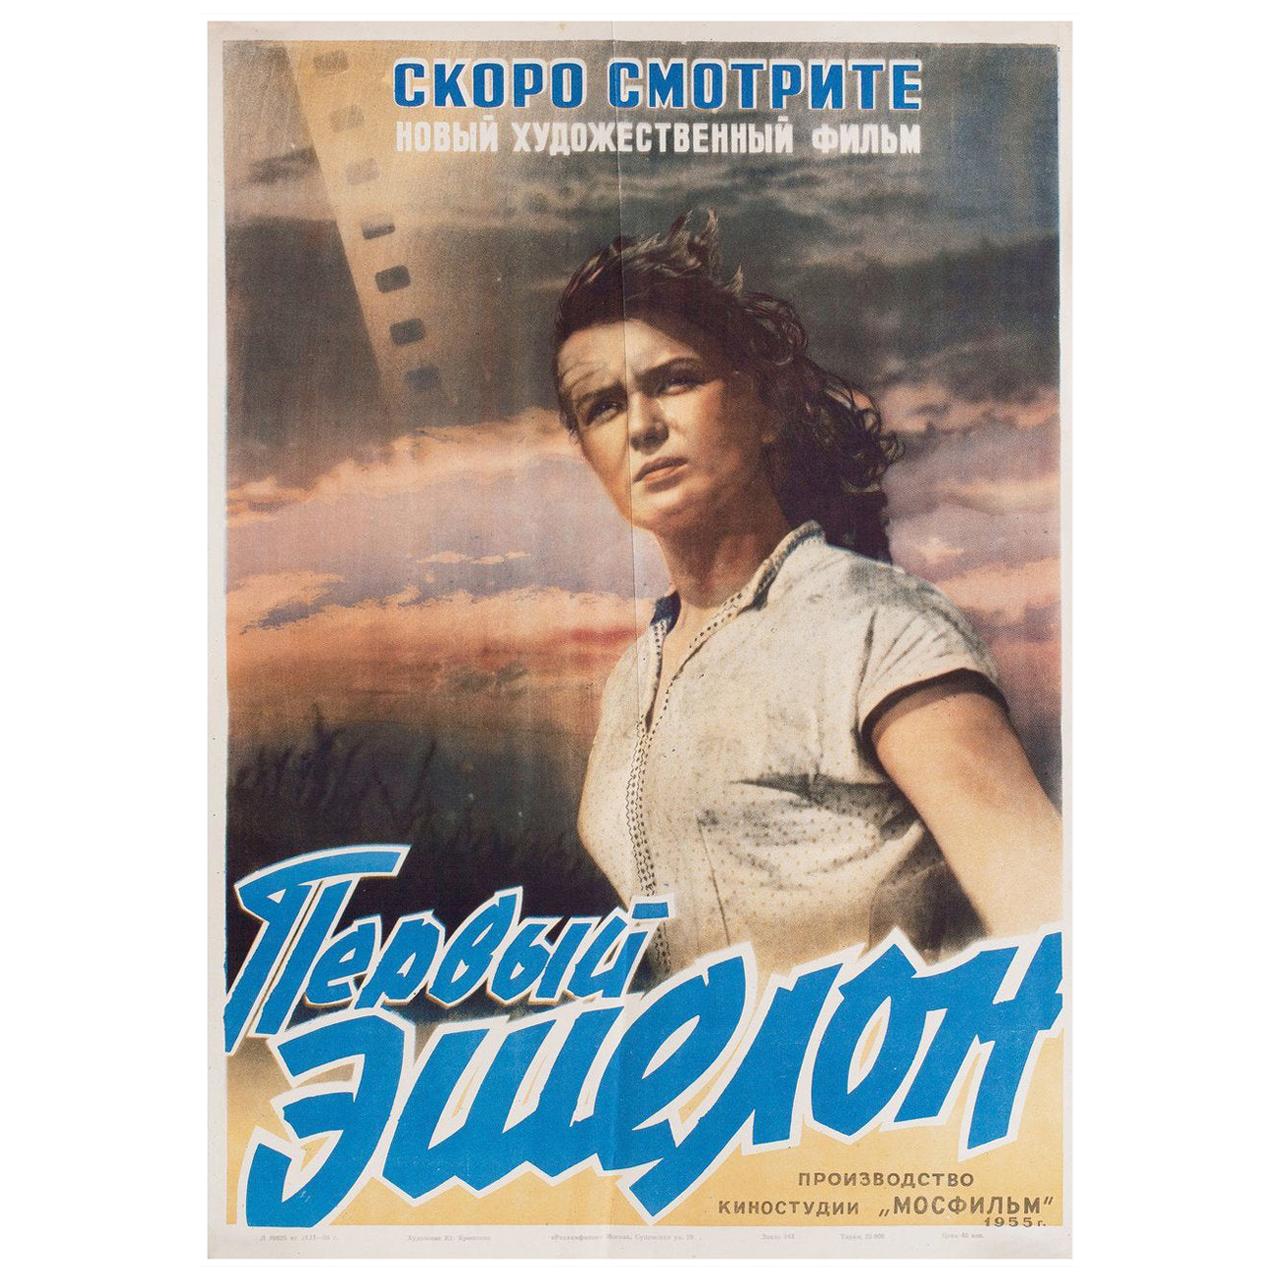 Das erste Echelon 1957 Russisch A2 Filmplakat